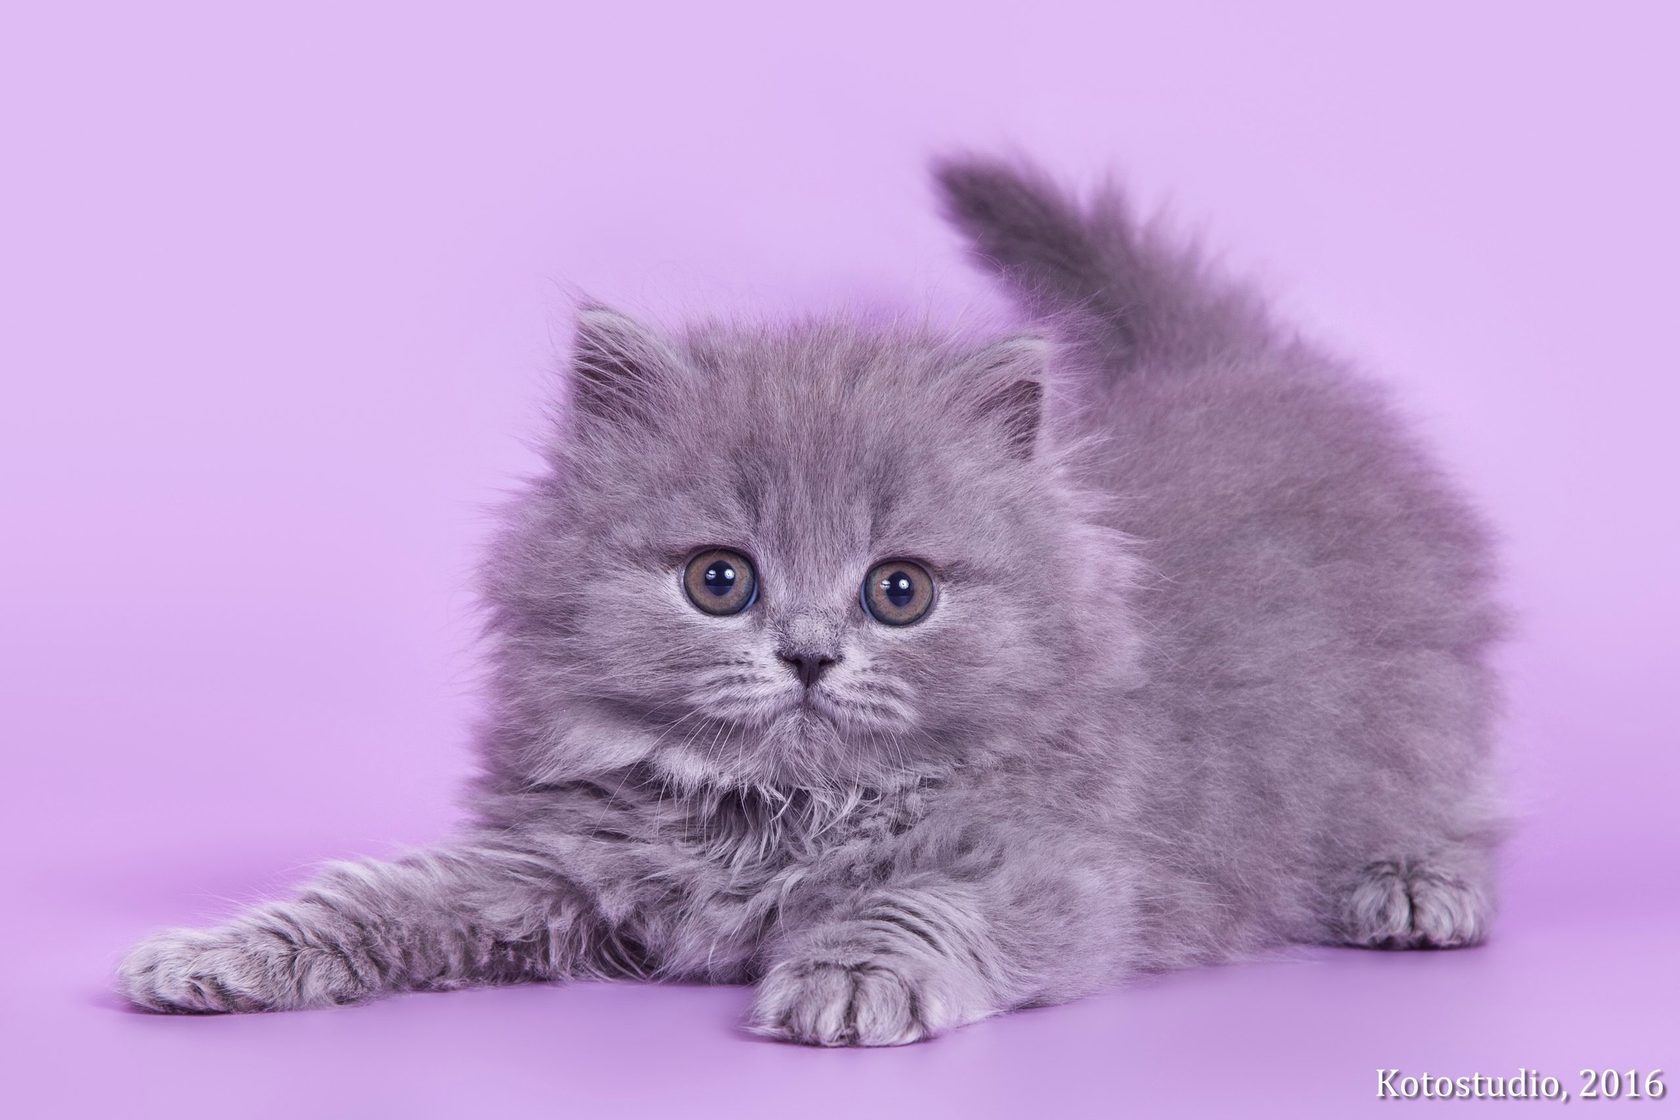 Купить британского котенка в спб. Купить котенка голубого окраса пушистые в СПБ. Купить котёнка британца в СПБ недорого в Санкт-Петербурге.